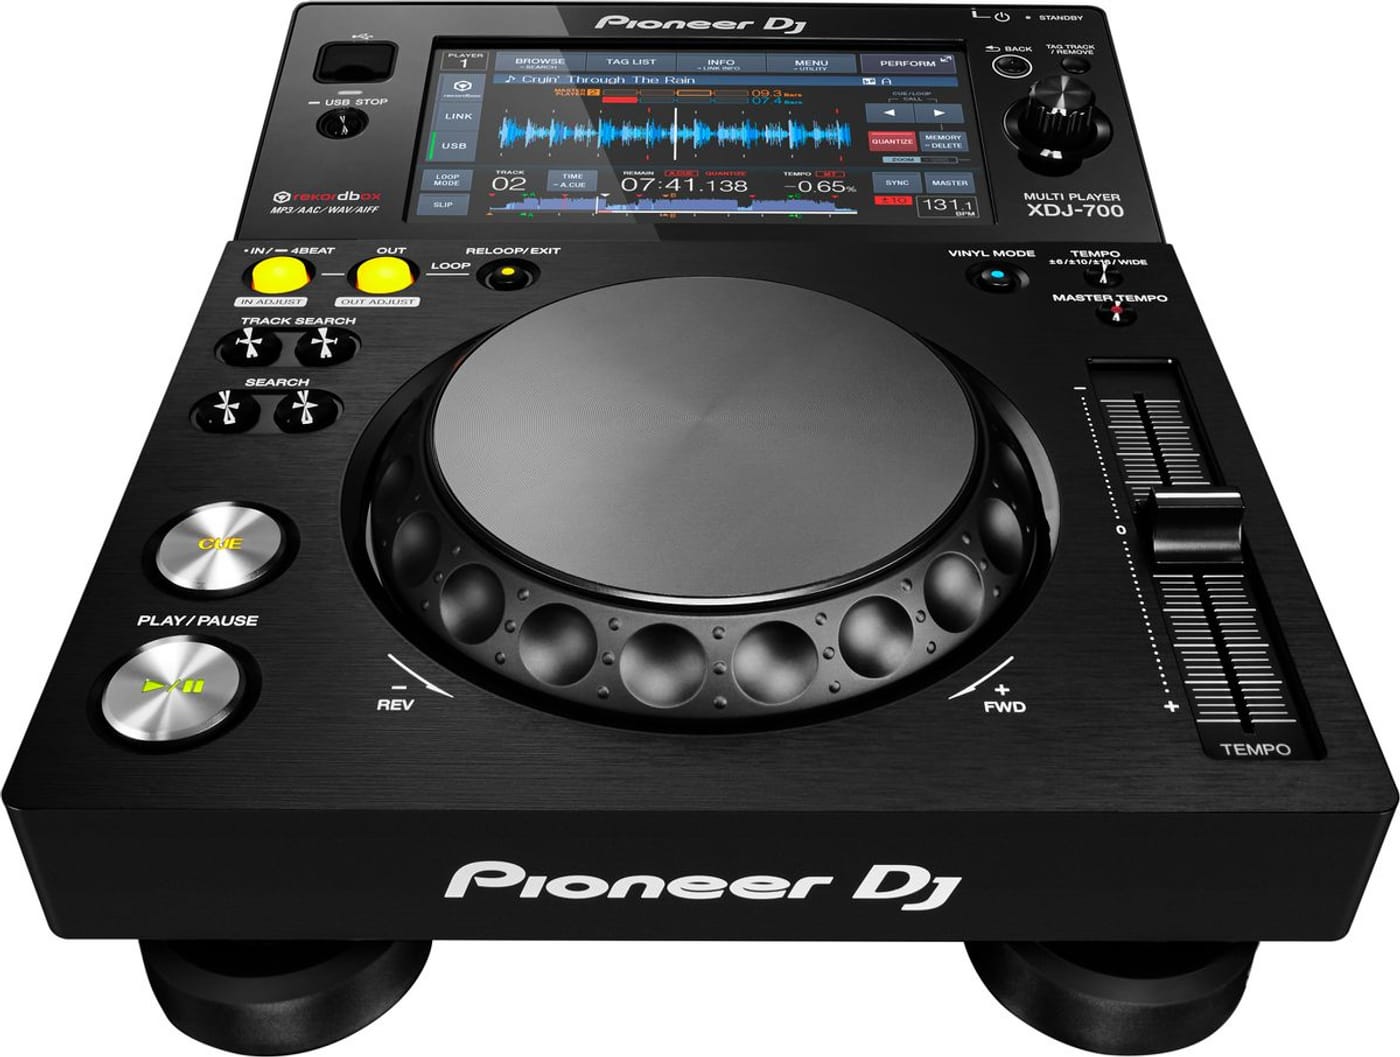 Pioneer Dj Xdj-700 Pack - Full DJ set - Variation 2